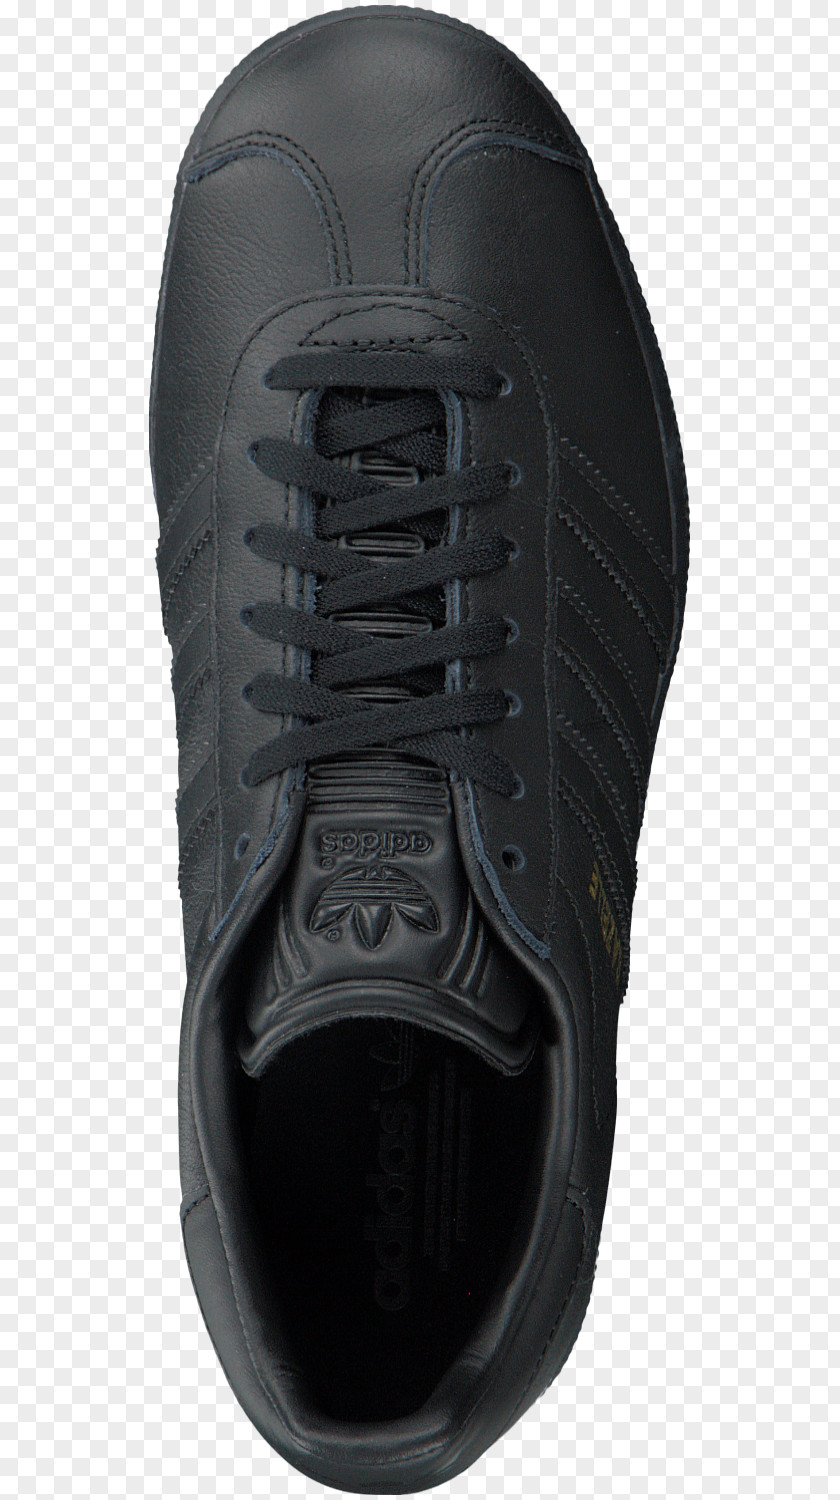 Gazelle Shoe Sneakers Footwear Adidas Clothing PNG